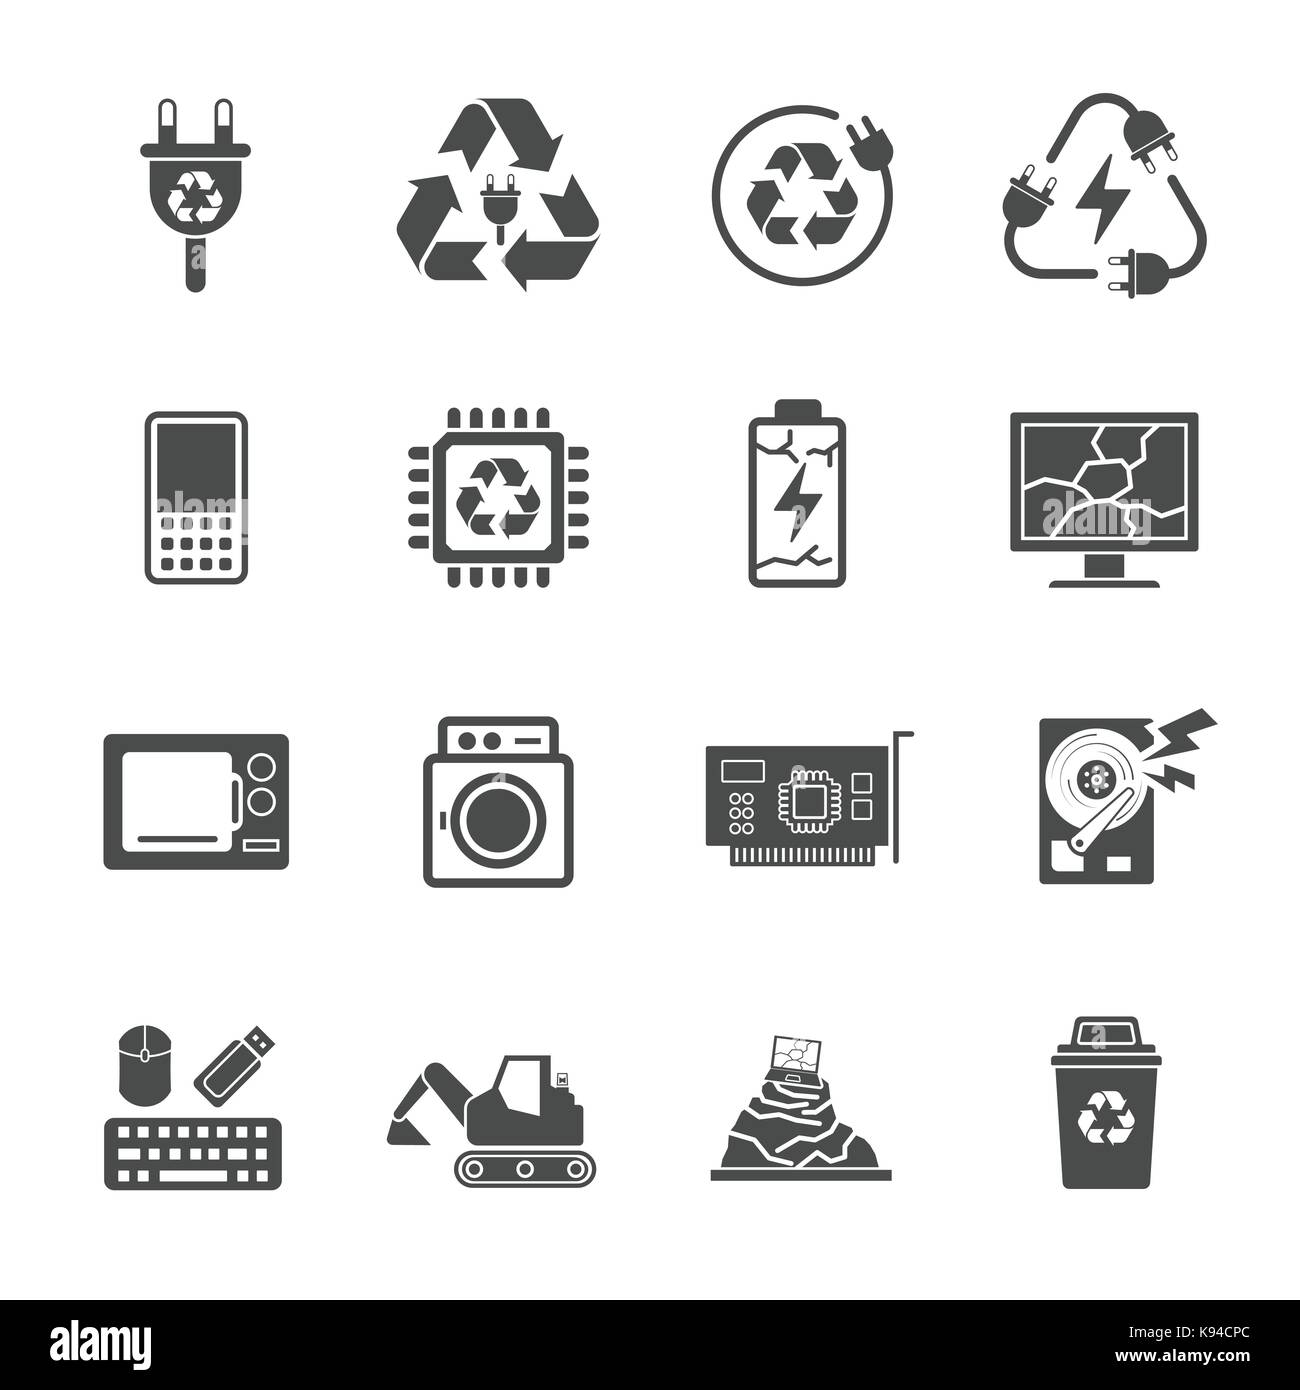 Reciclaje de basura, la basura electrónica contiene iconos tales como los residuos electrónicos, el monitor, el teléfono, la batería y mucho más. Ilustración del Vector